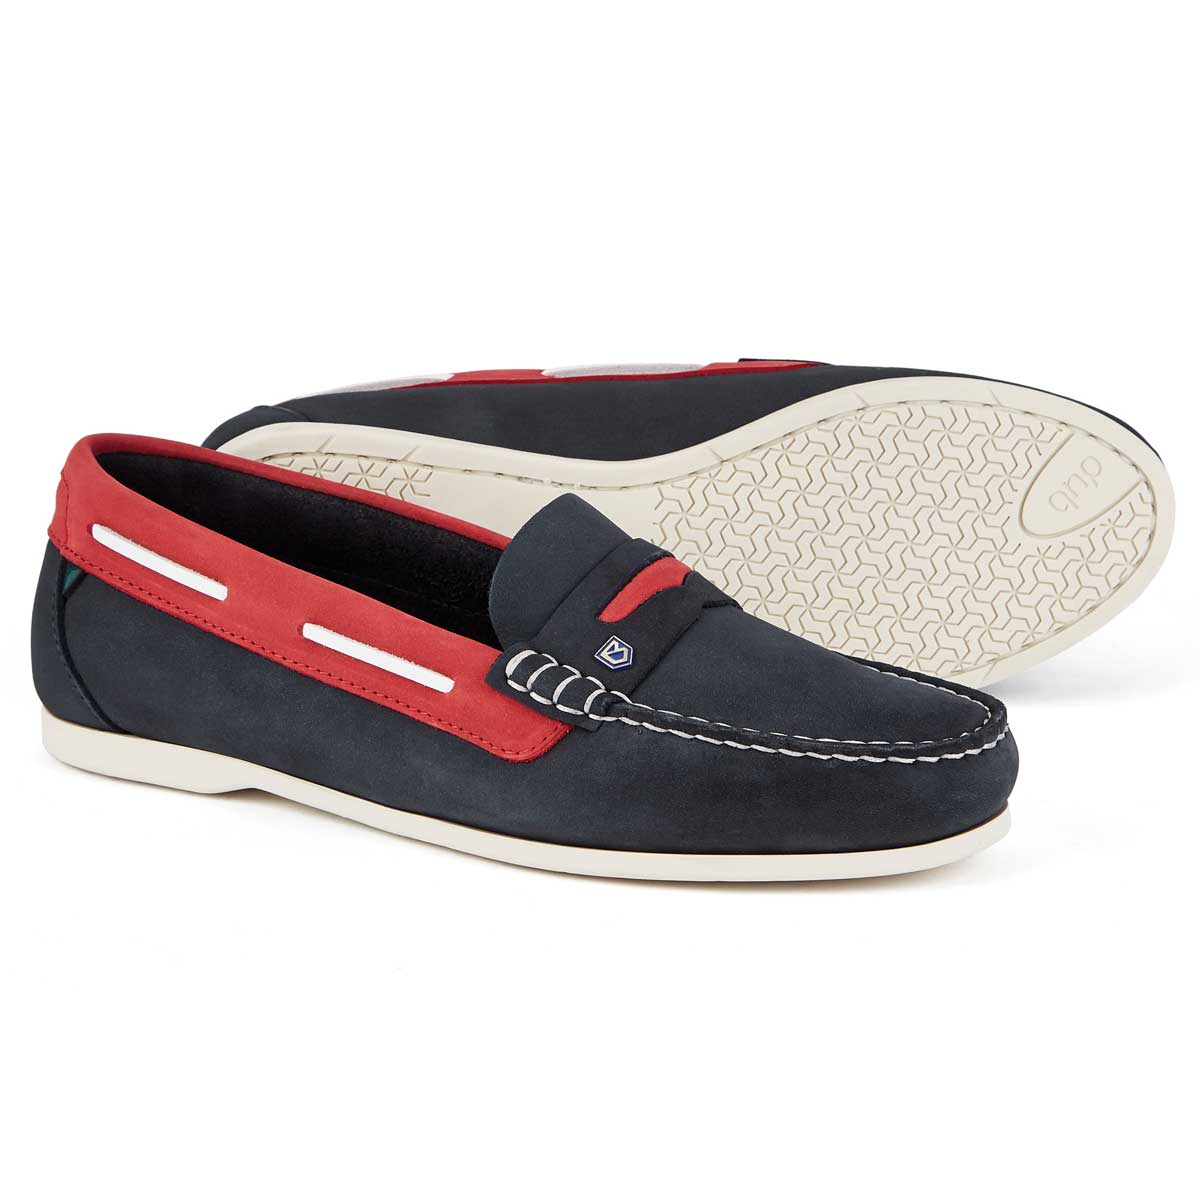 20% OFF - DUBARRY Ladies Belize Deck Shoes - Denim & Red - Size: UK 4 (EU 37)